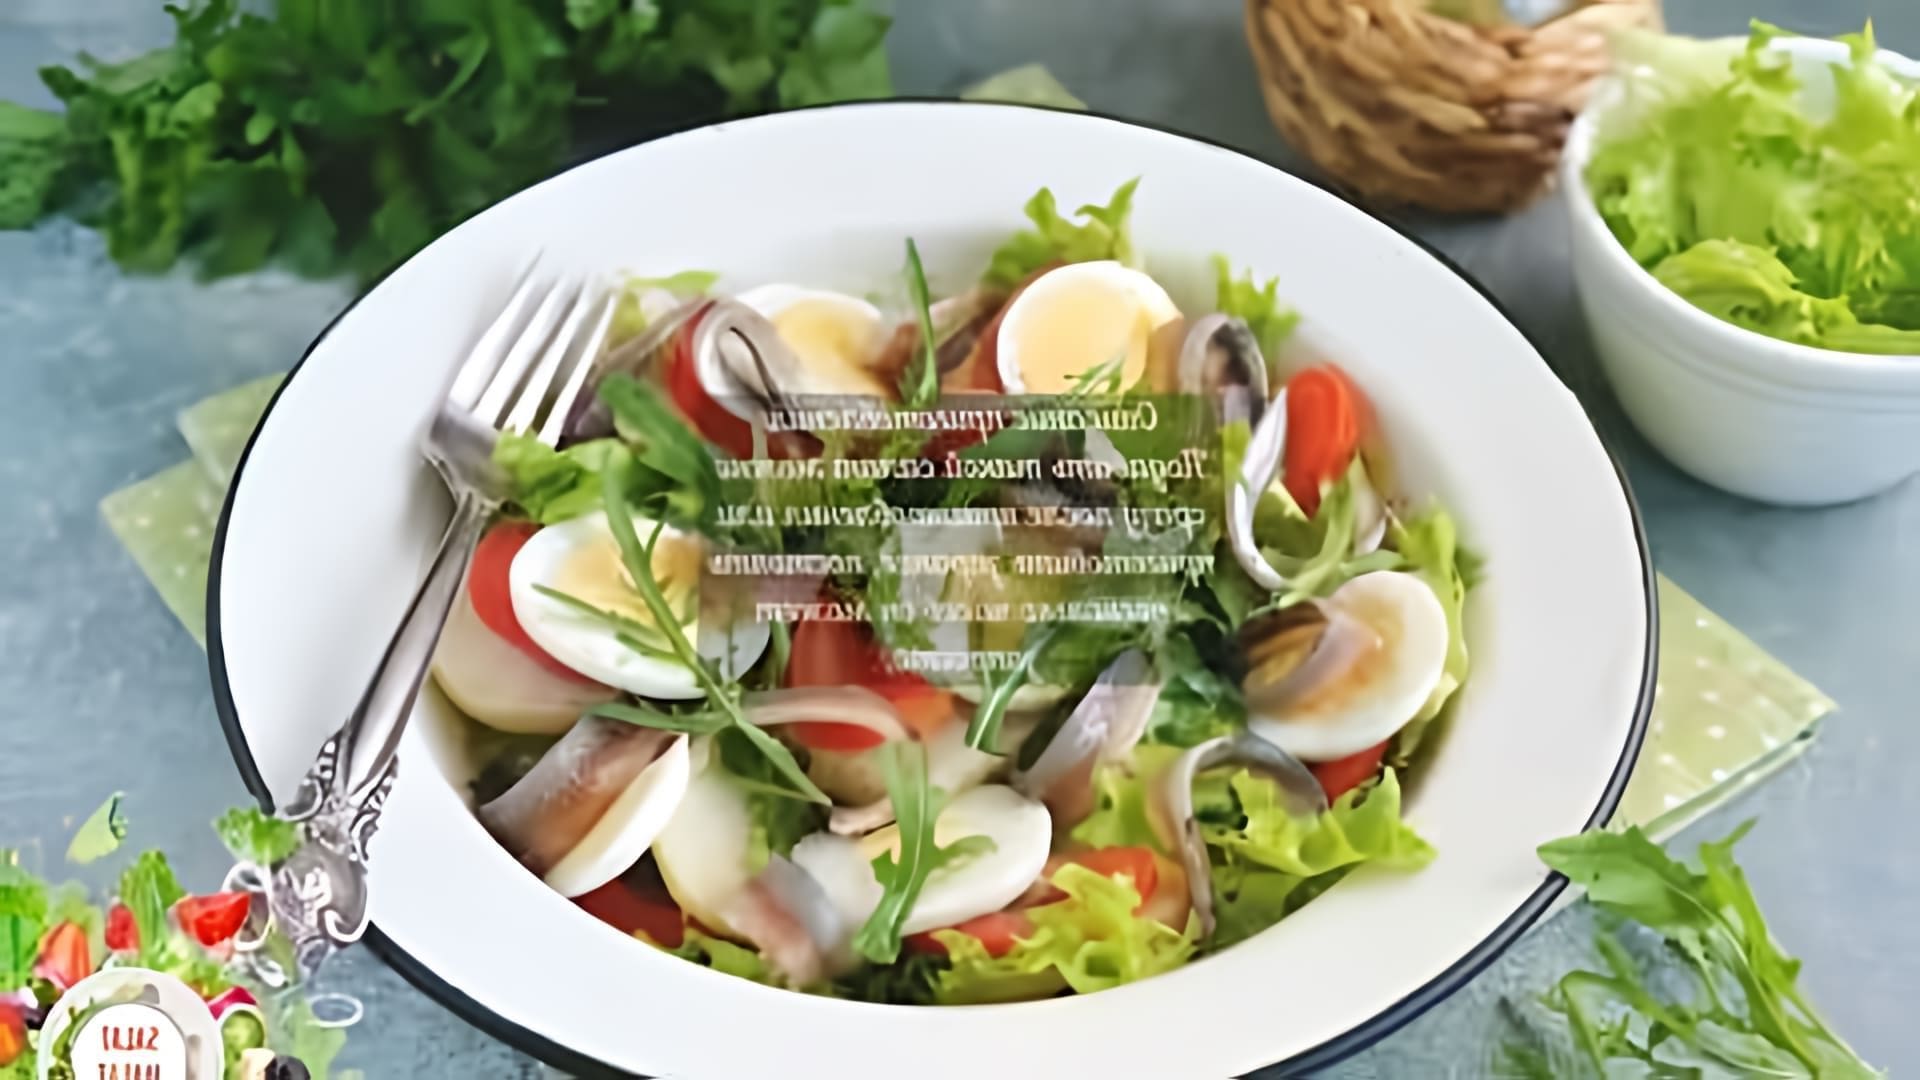 Салат с анчоусами и рукколой - это вкусное и полезное блюдо, которое можно приготовить в домашних условиях